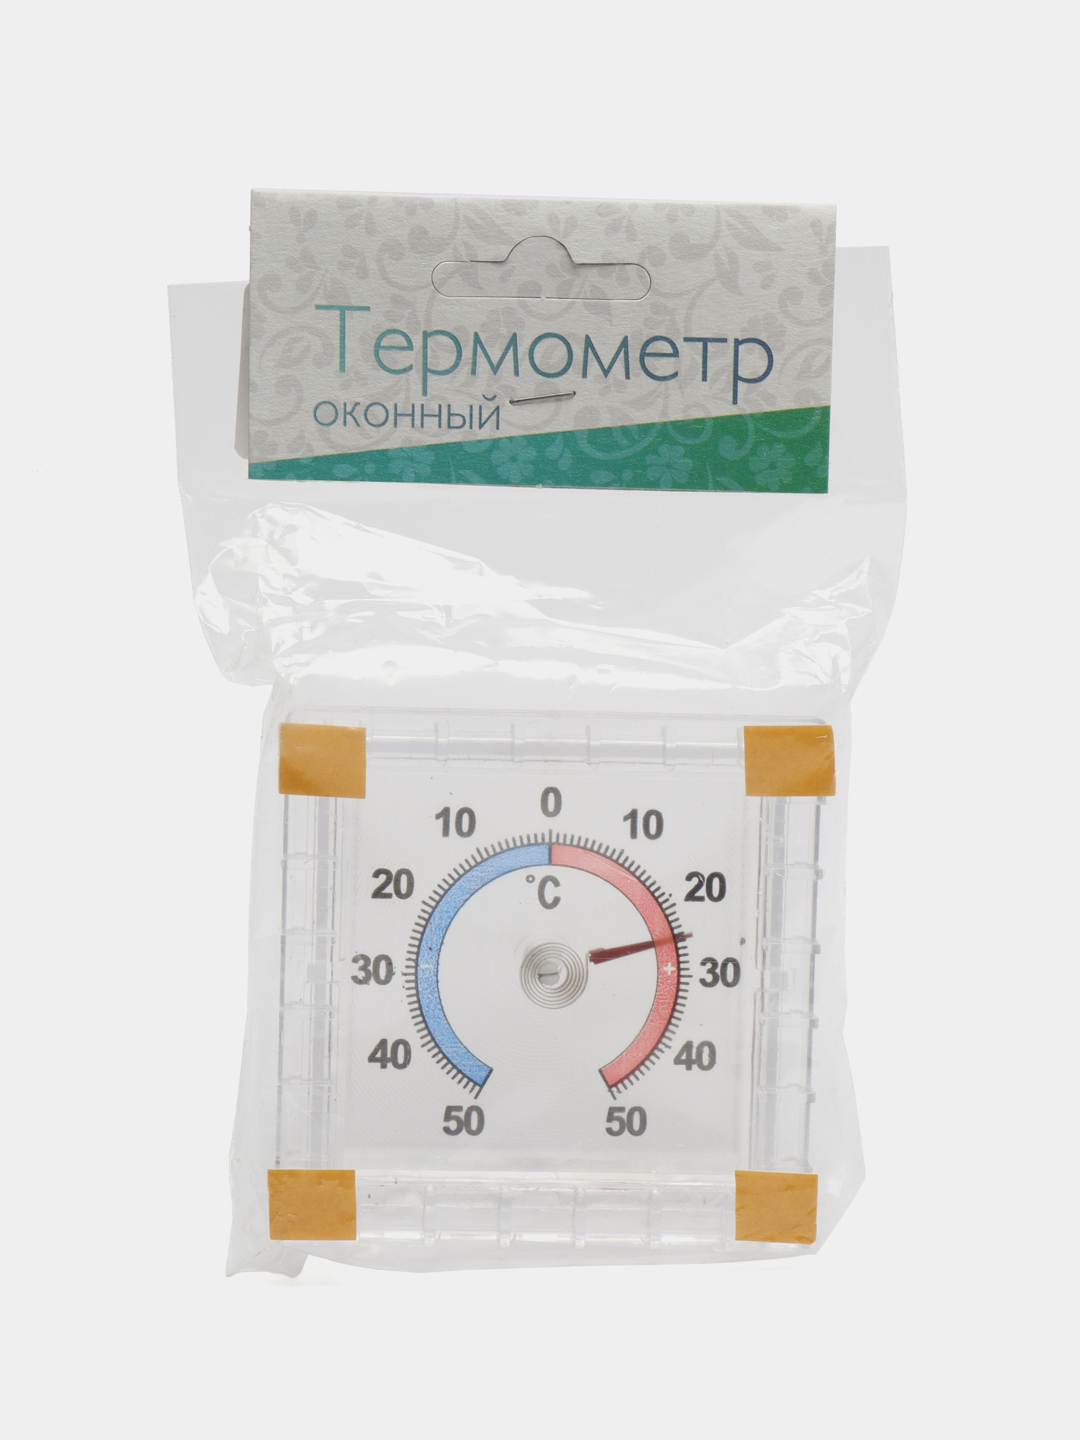 Термометр T-5 комнатно-уличный +50бл описание и характеристики для покупки оптом и в розницу